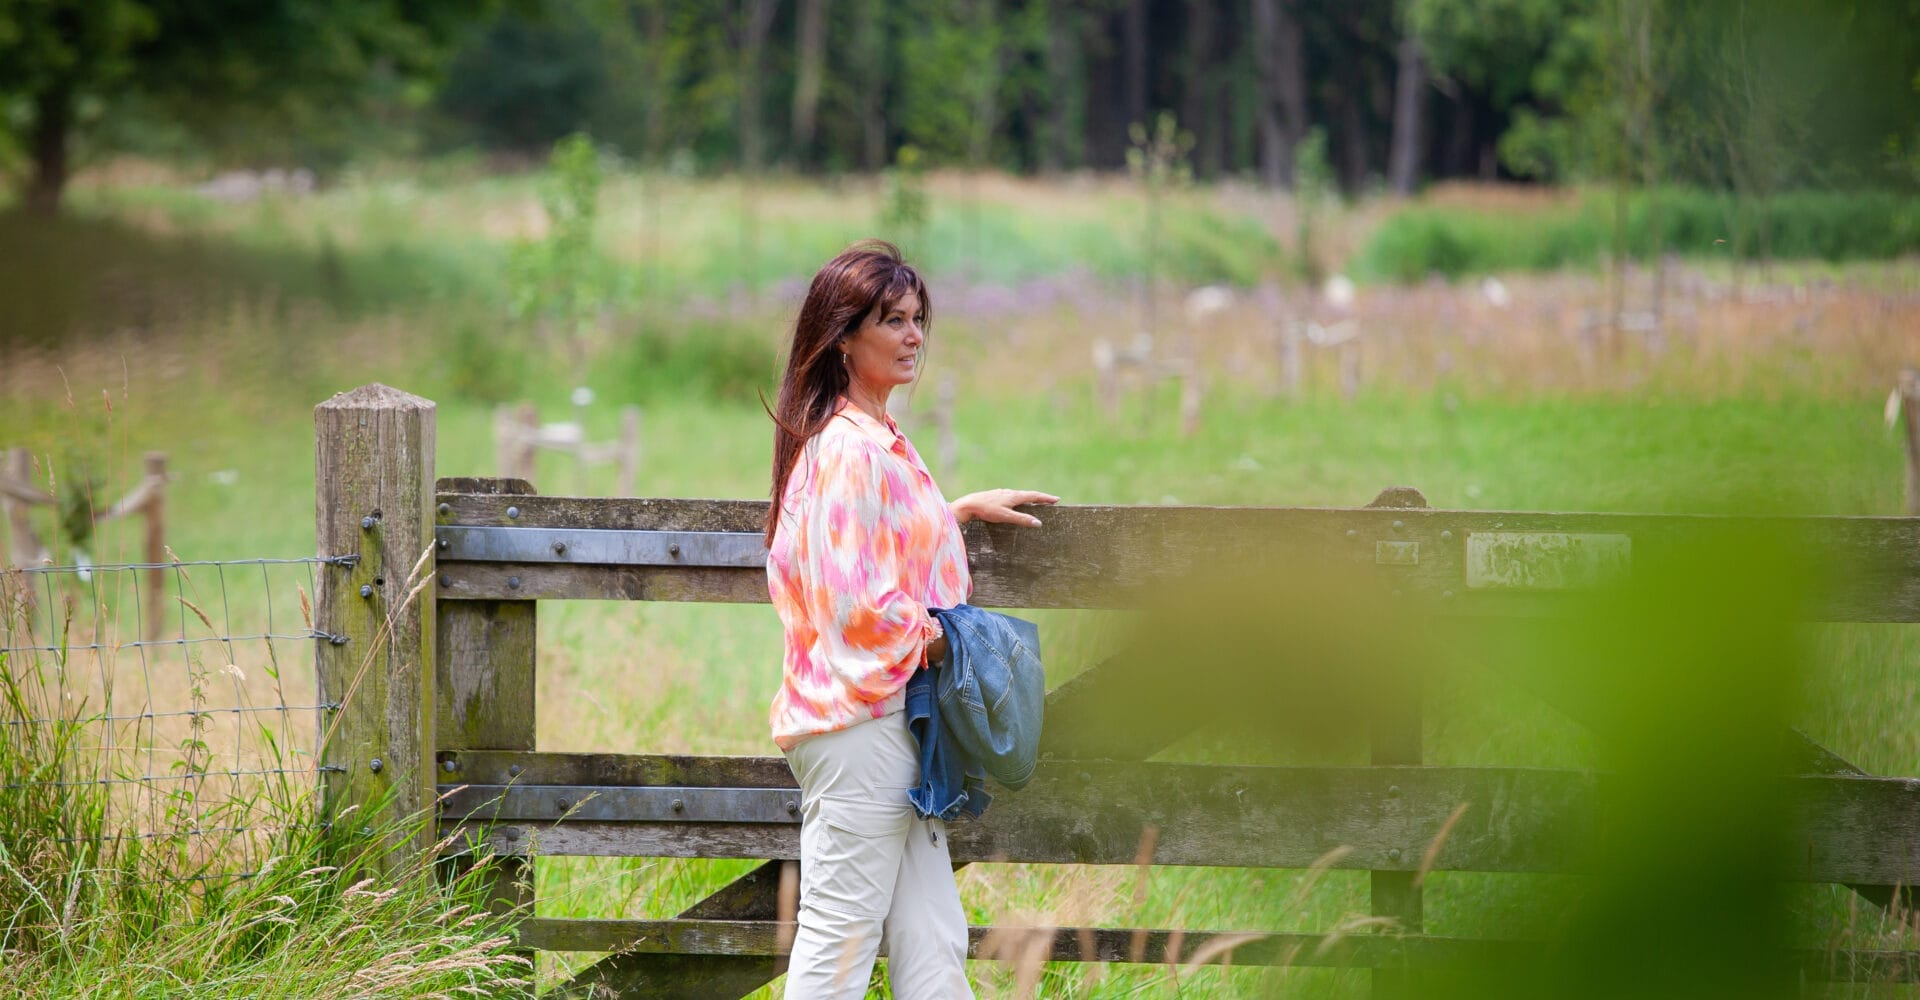 Een vrouw in een kleurrijke blouse en lichte broek staat bij een houten hek in een weelderig grasveld met bomen op de achtergrond. Ze houdt een jas vast en kijkt in de verte.